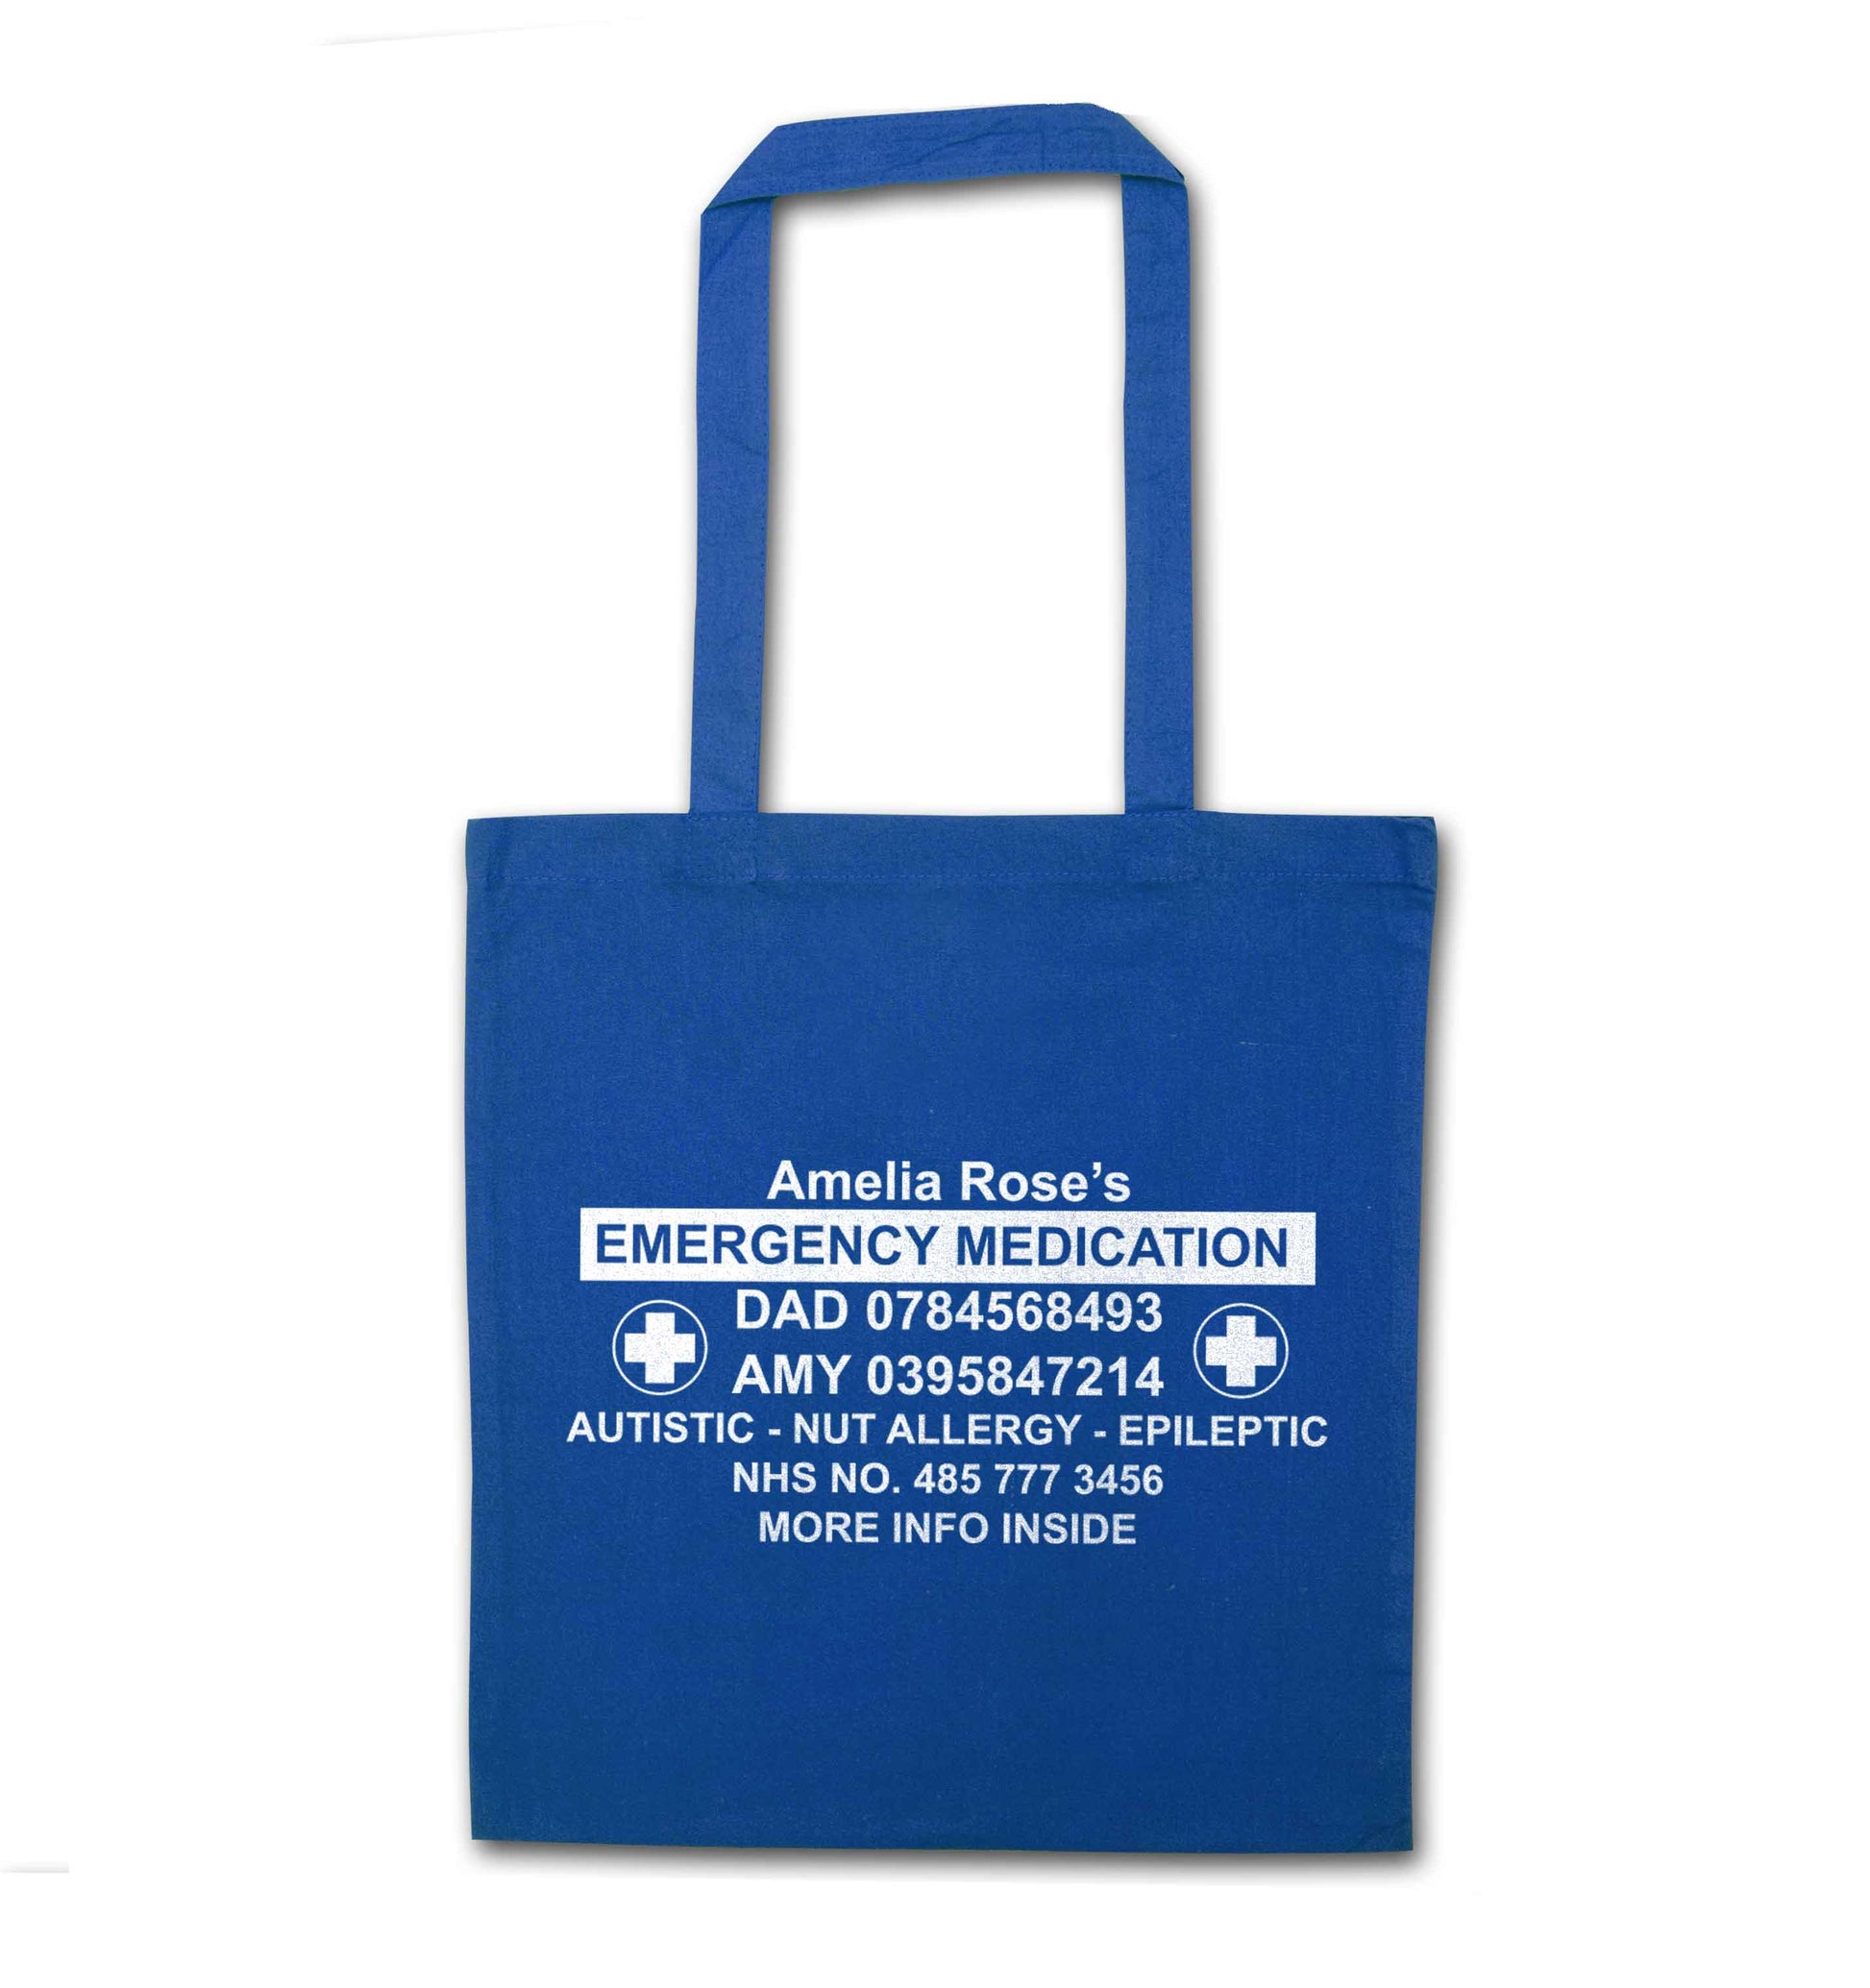 Personalised emergency medication bag blue tote bag